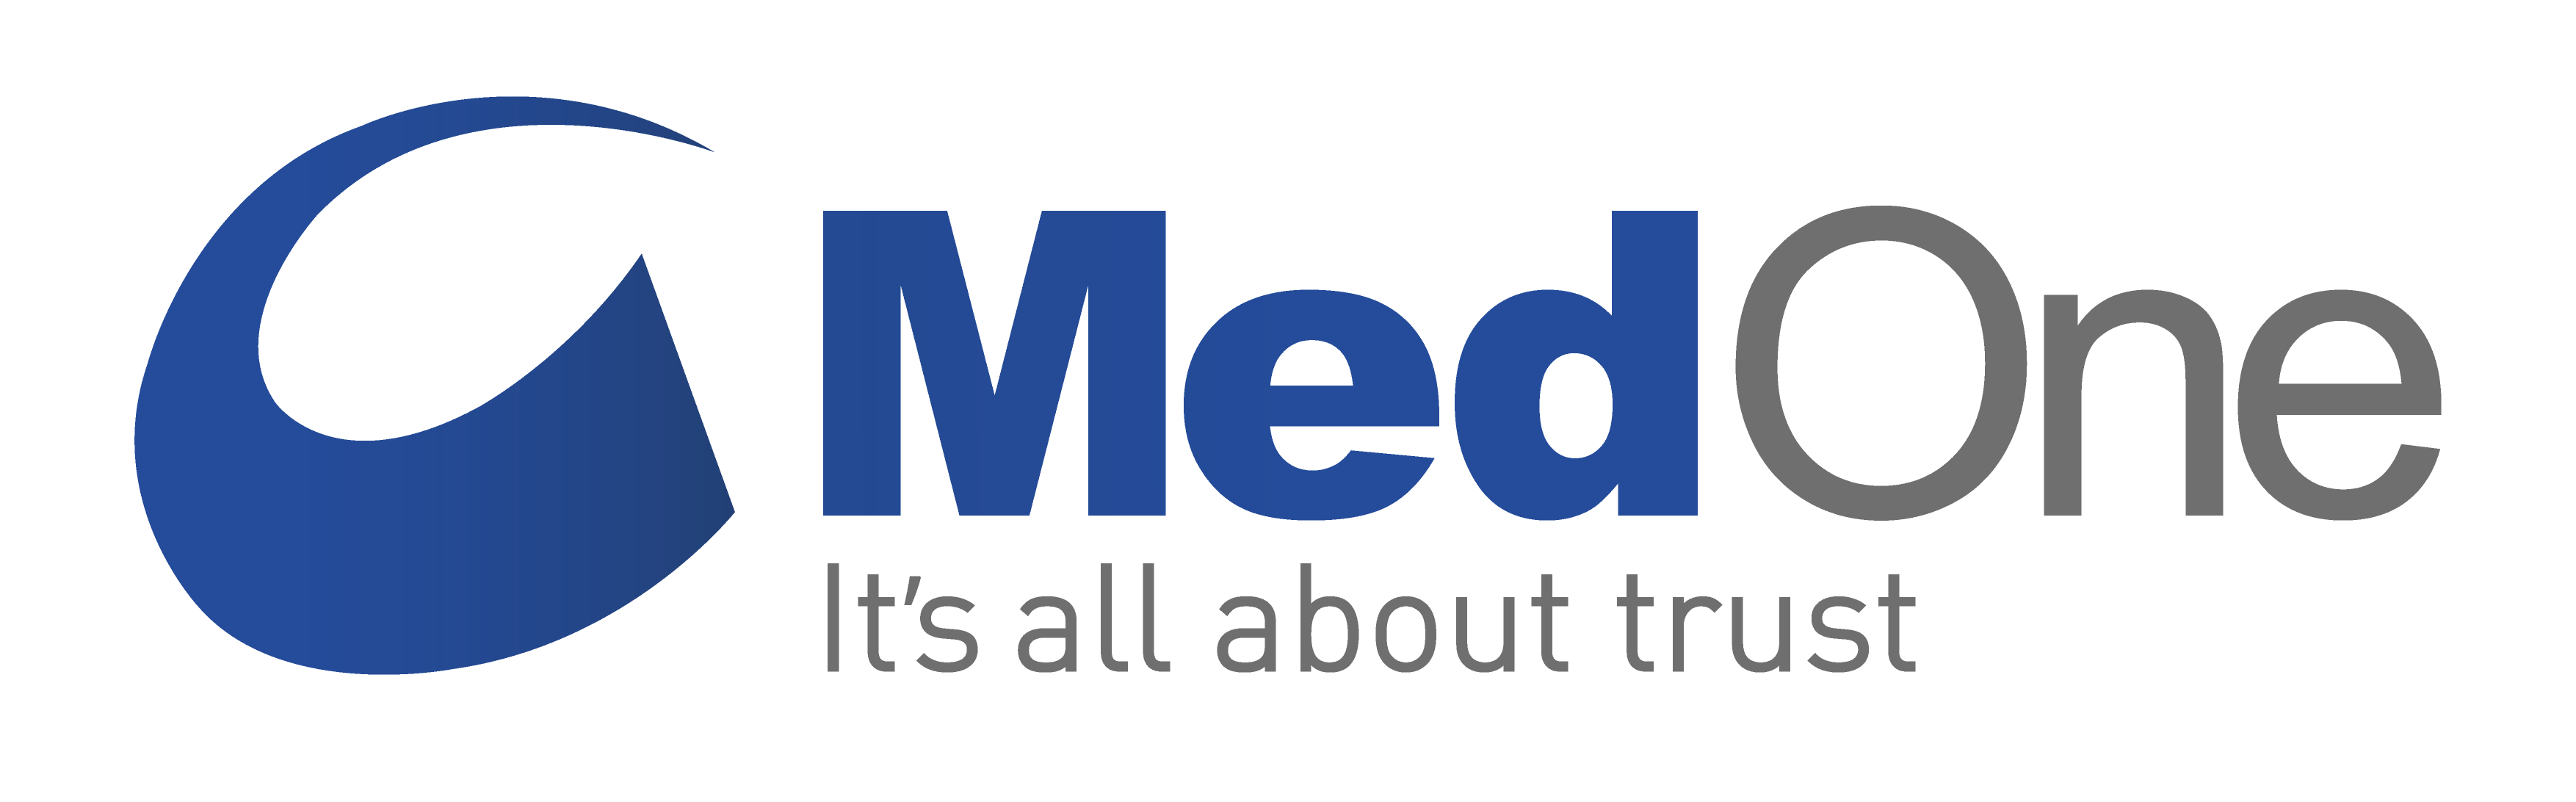 MedOne Logo